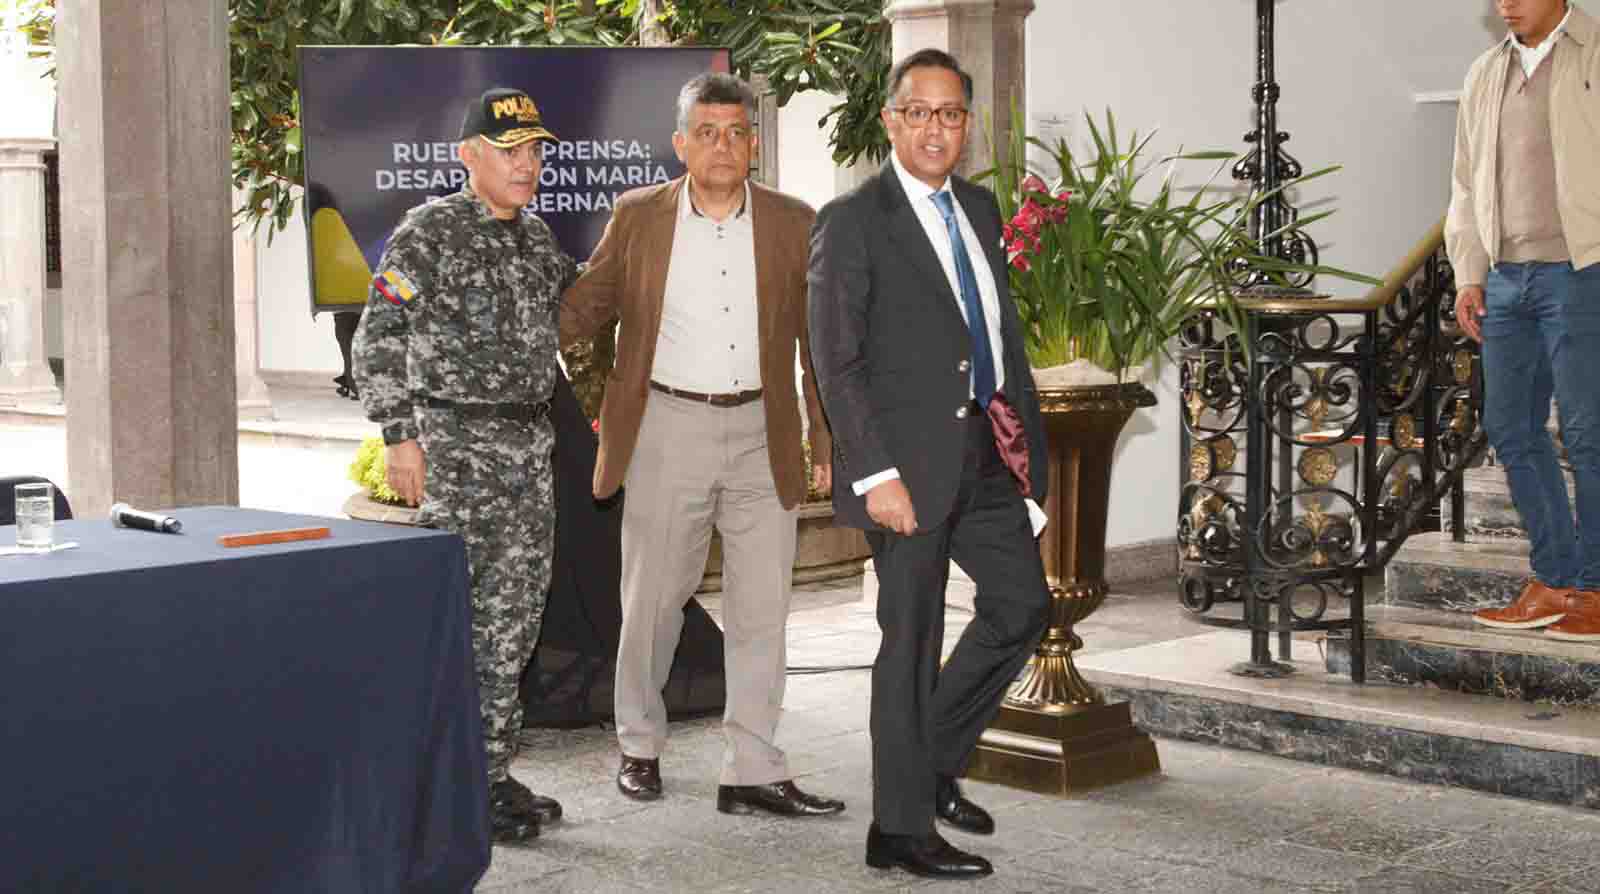 Autoridades del Gobierno de Ecuador ofrecieron una rueda de prensa para informar sobre el caso de la desaparición de María Belén Bernal. Foto: Carlos Noriega / EL COMERCIO.